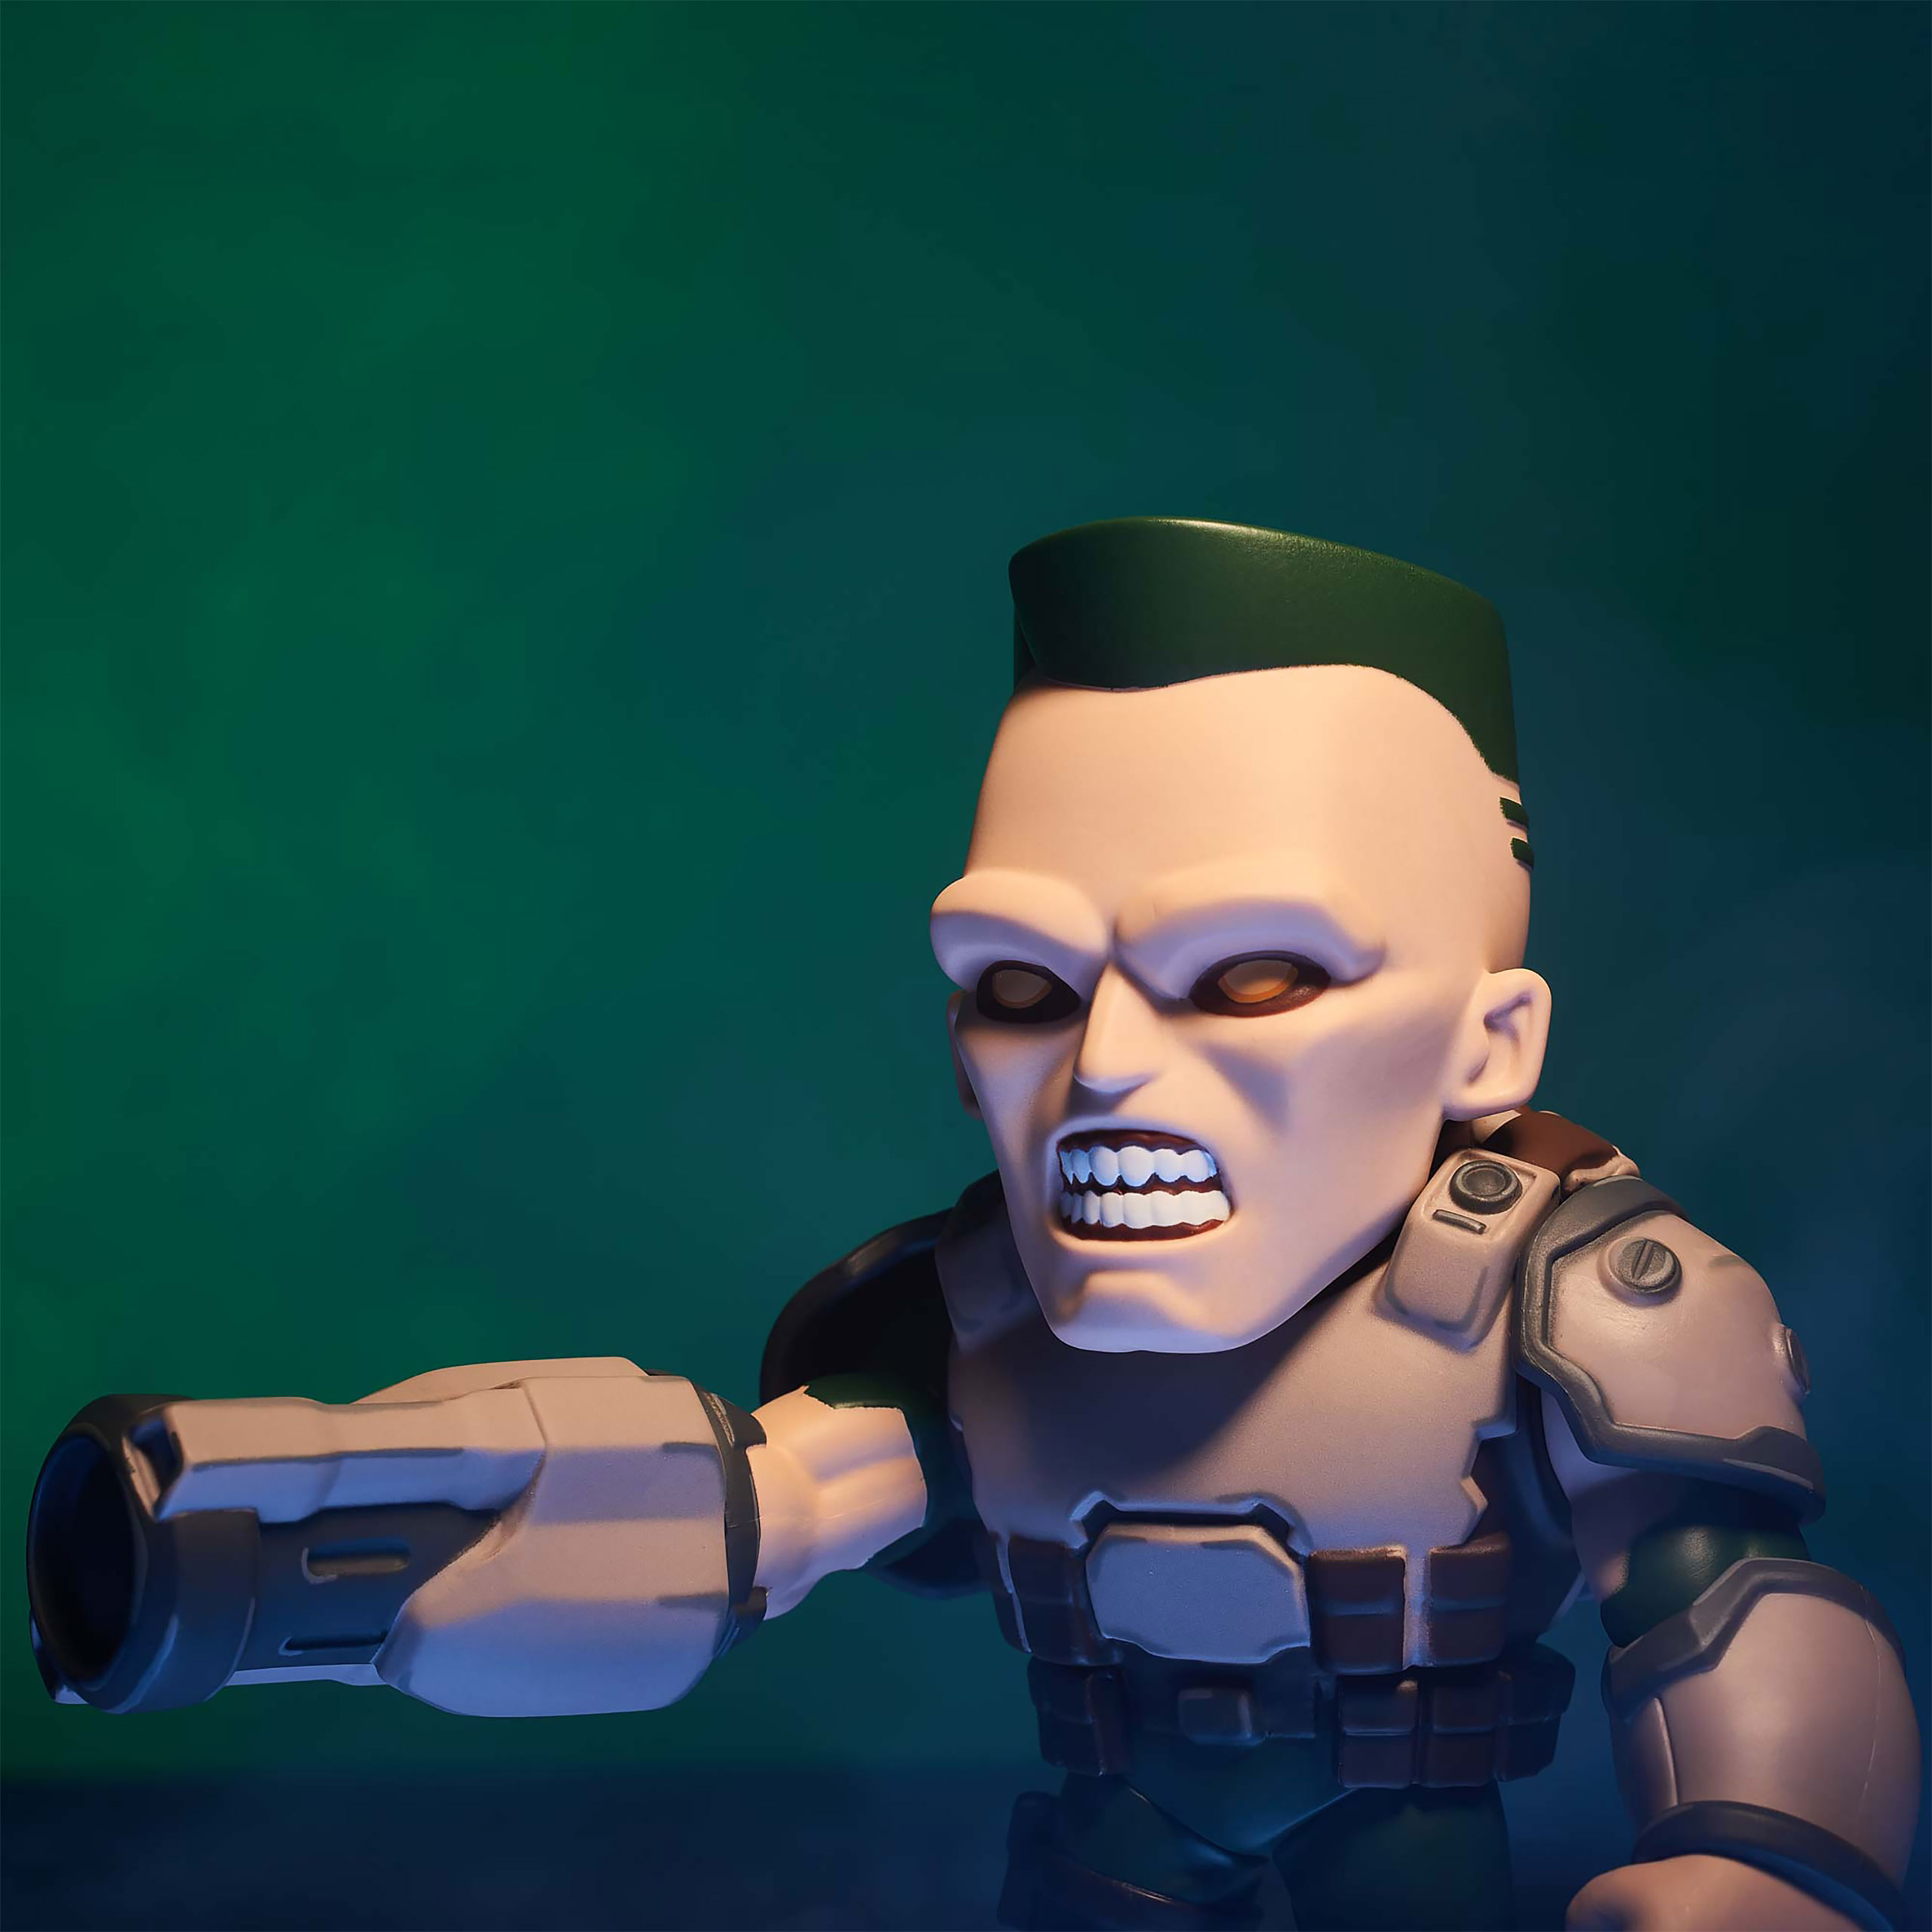 Doom - Soldier Actionfigur